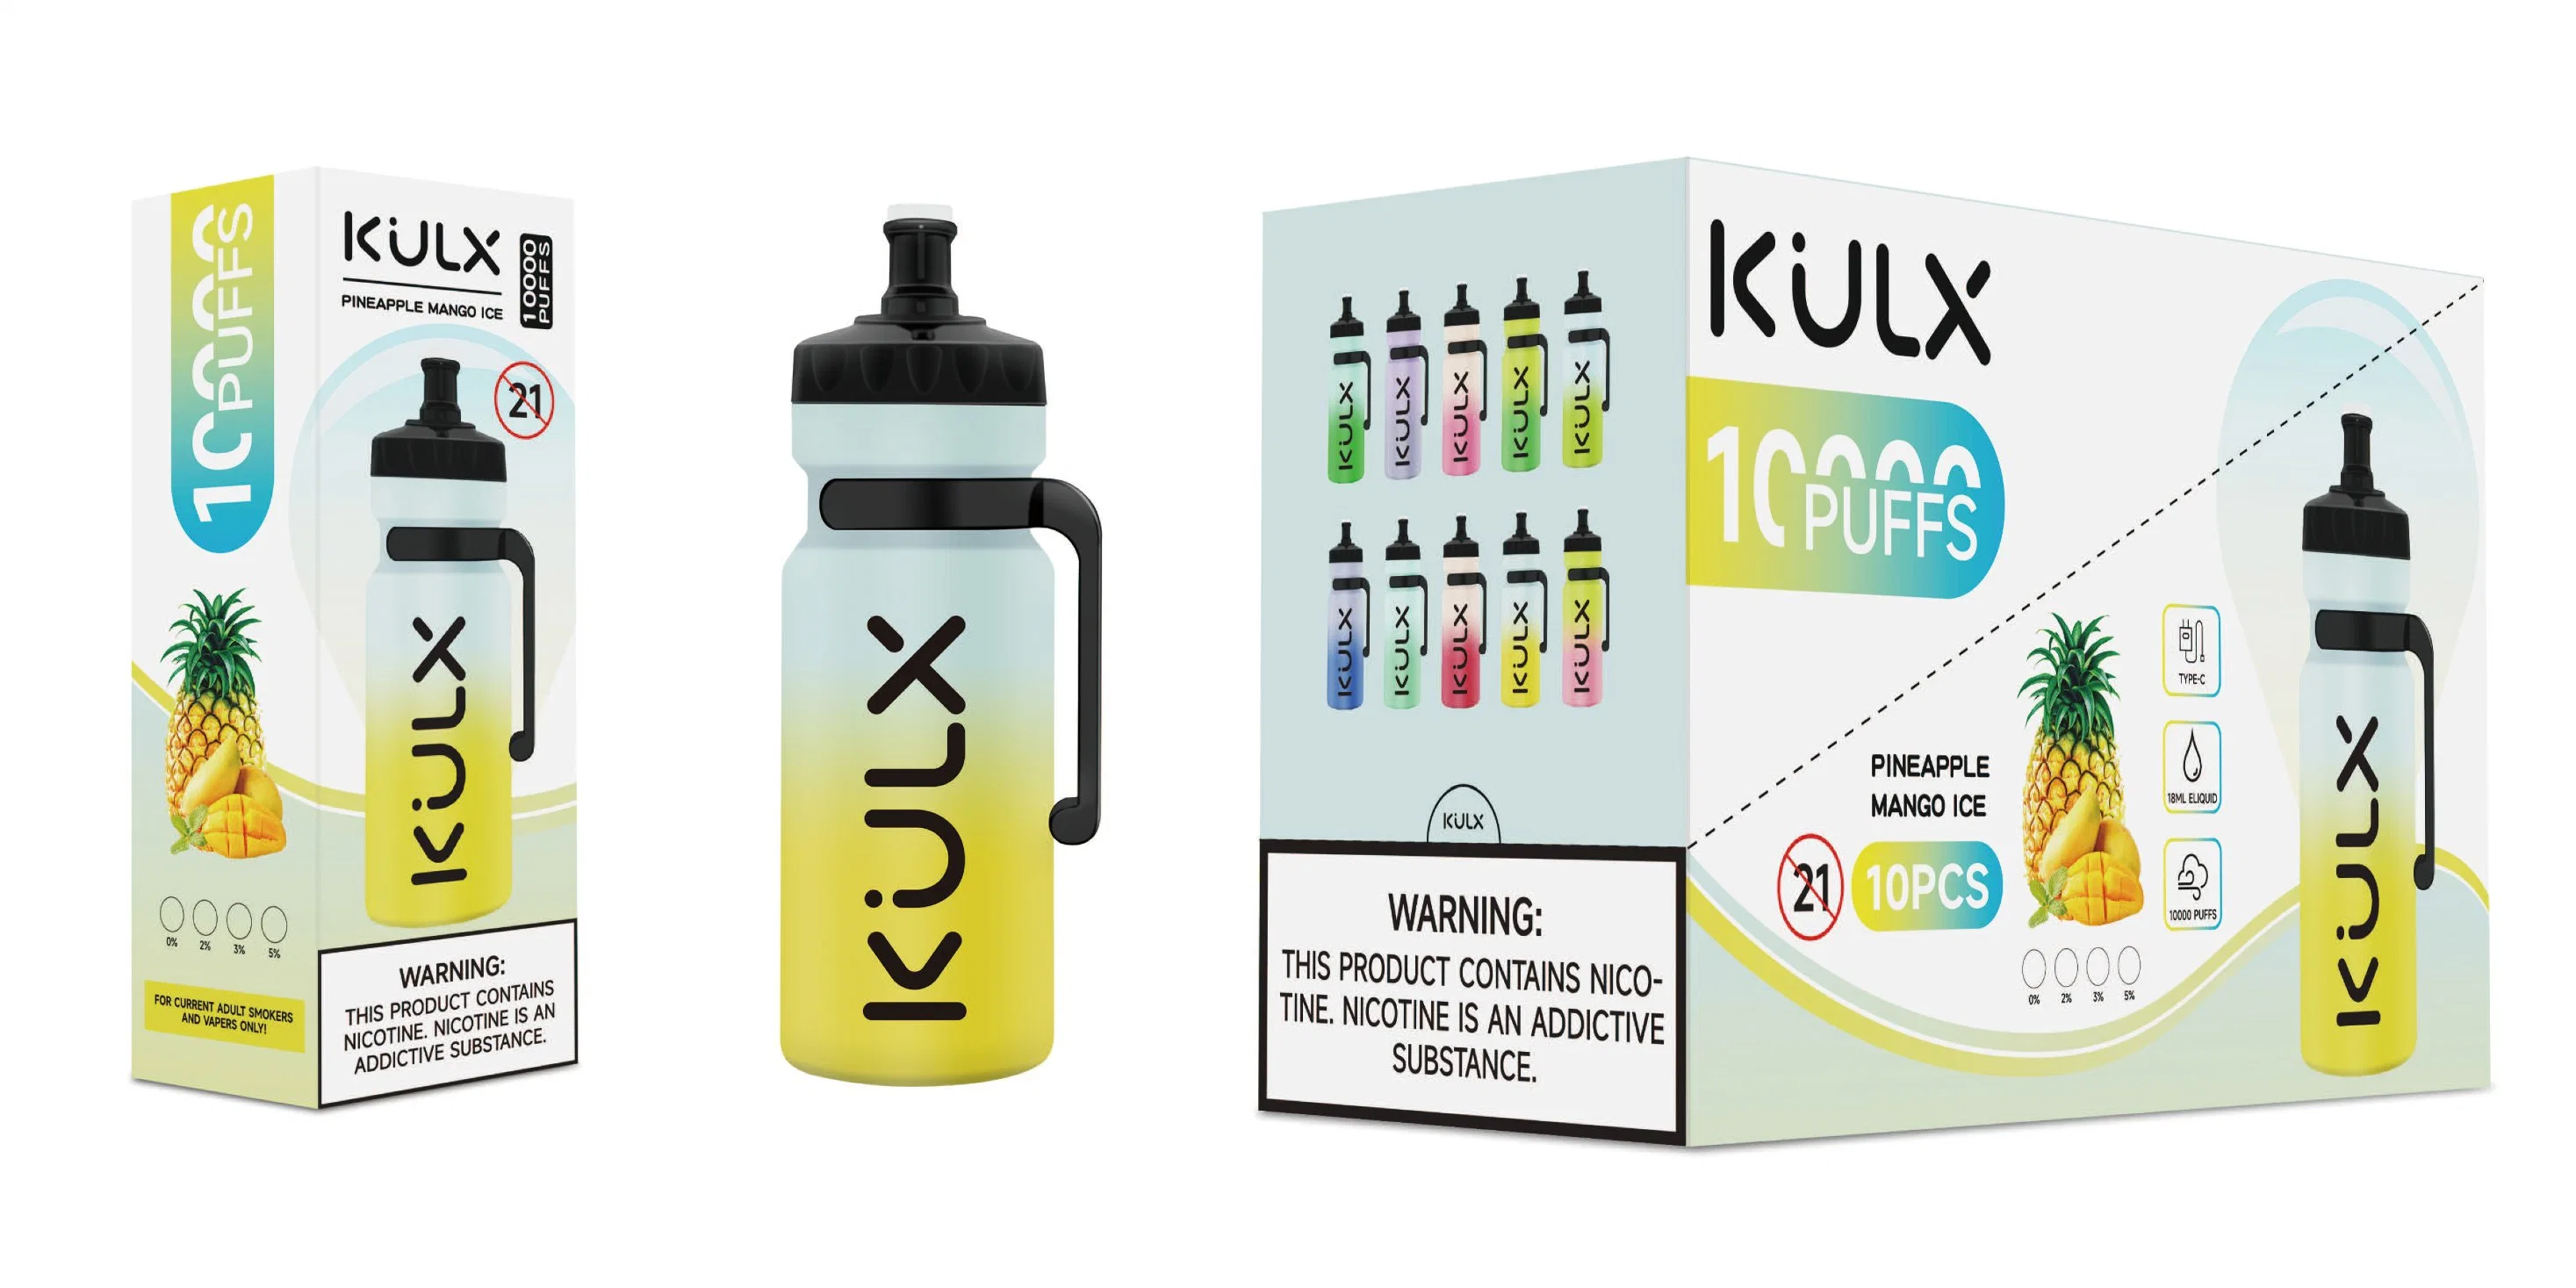 Kulx 10000 Puffs Bar Disposable E Cigarettes Airflow Control Device 0% 2% 5% Optional 10K Puffs Wholesale Vape Pen